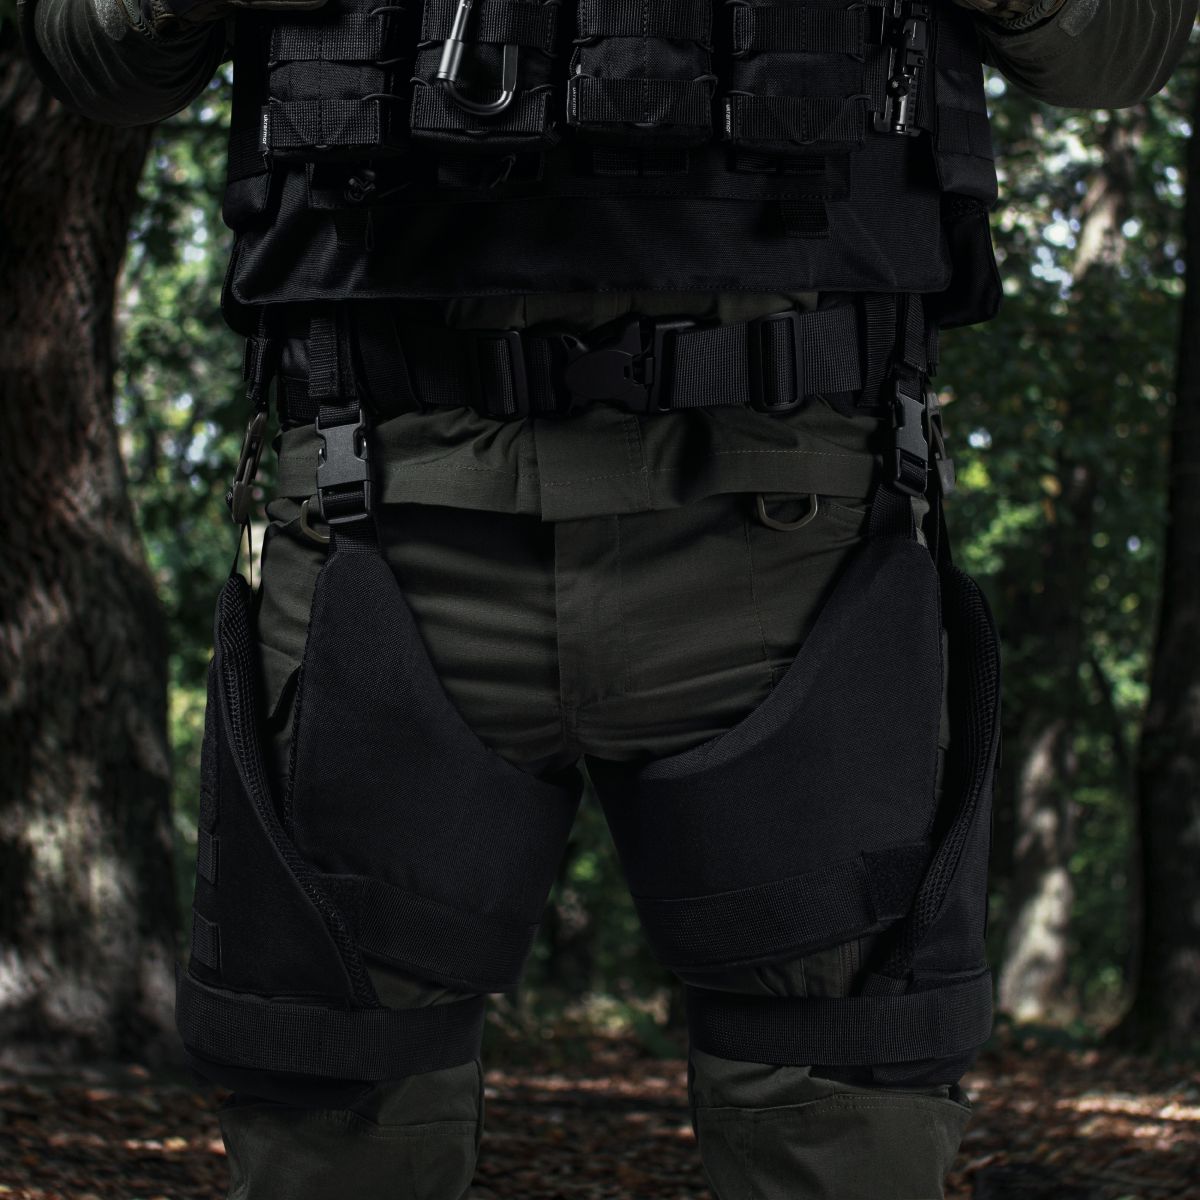 Захист внутрішньої частини стегна 1-го класу захисту (з балістичним пакетом). Чорний 2